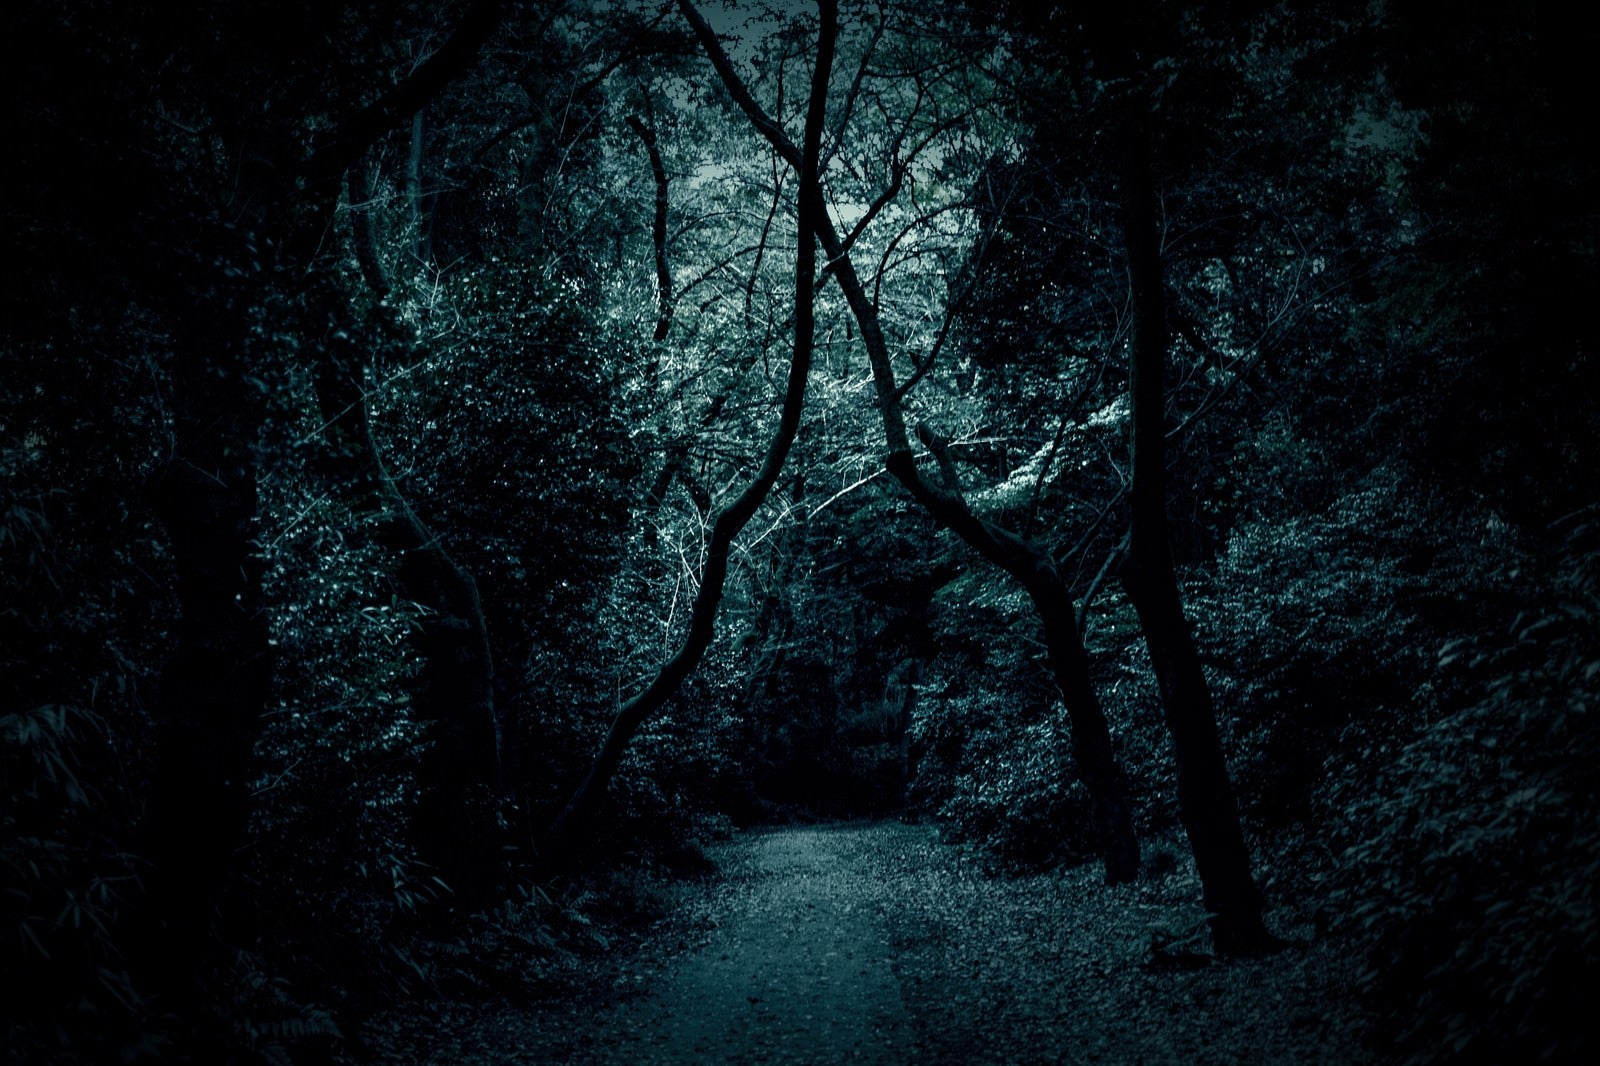 「木々の中の薄暗い道」の写真